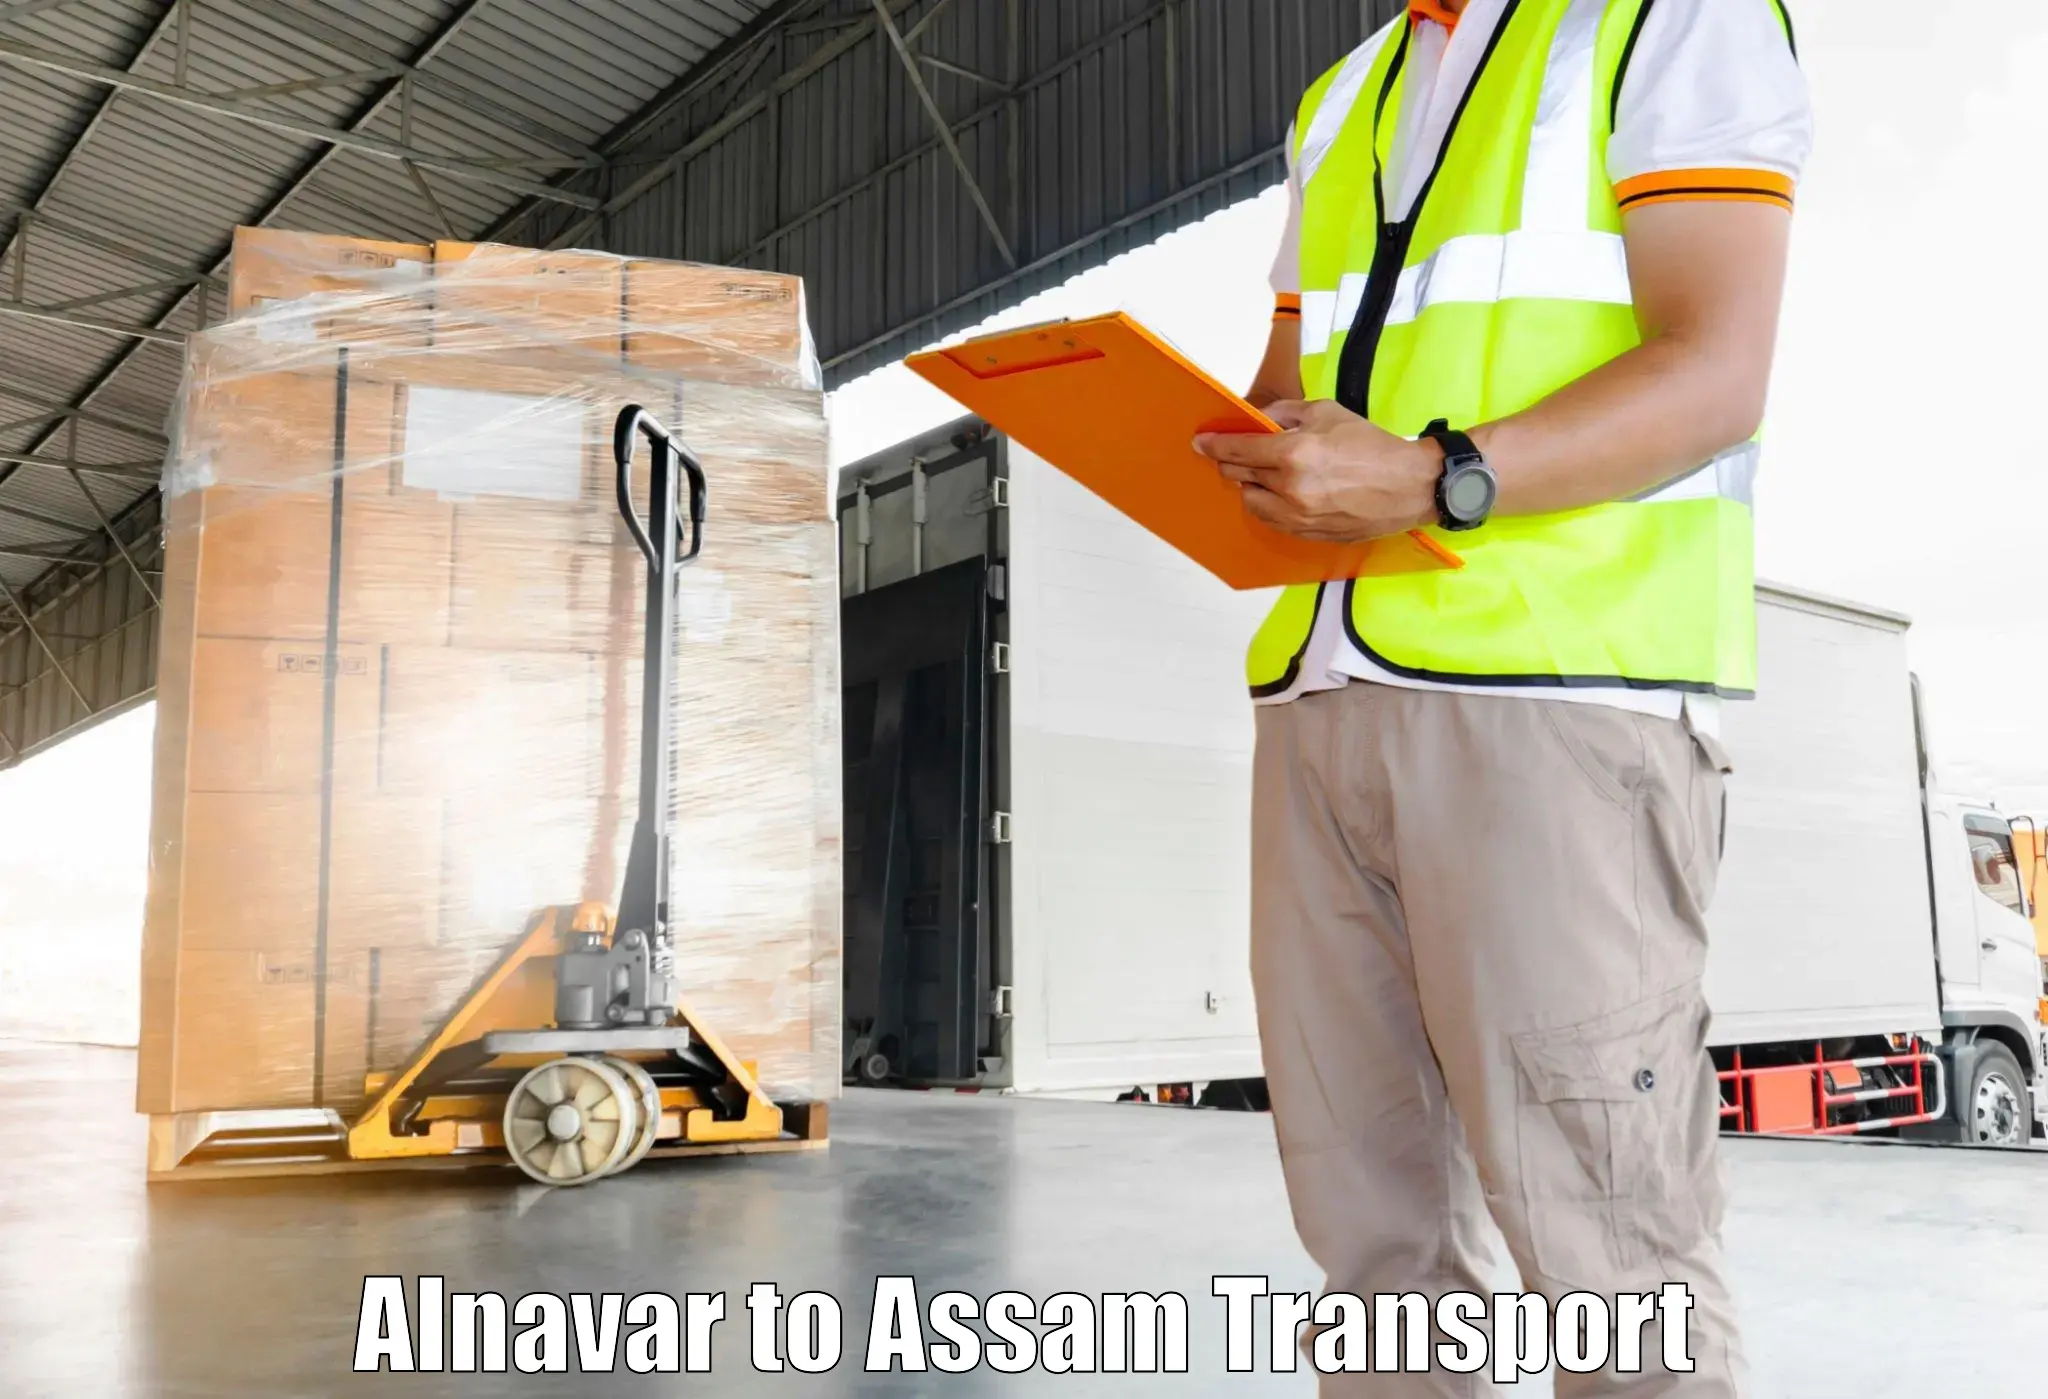 Furniture transport service Alnavar to Behali